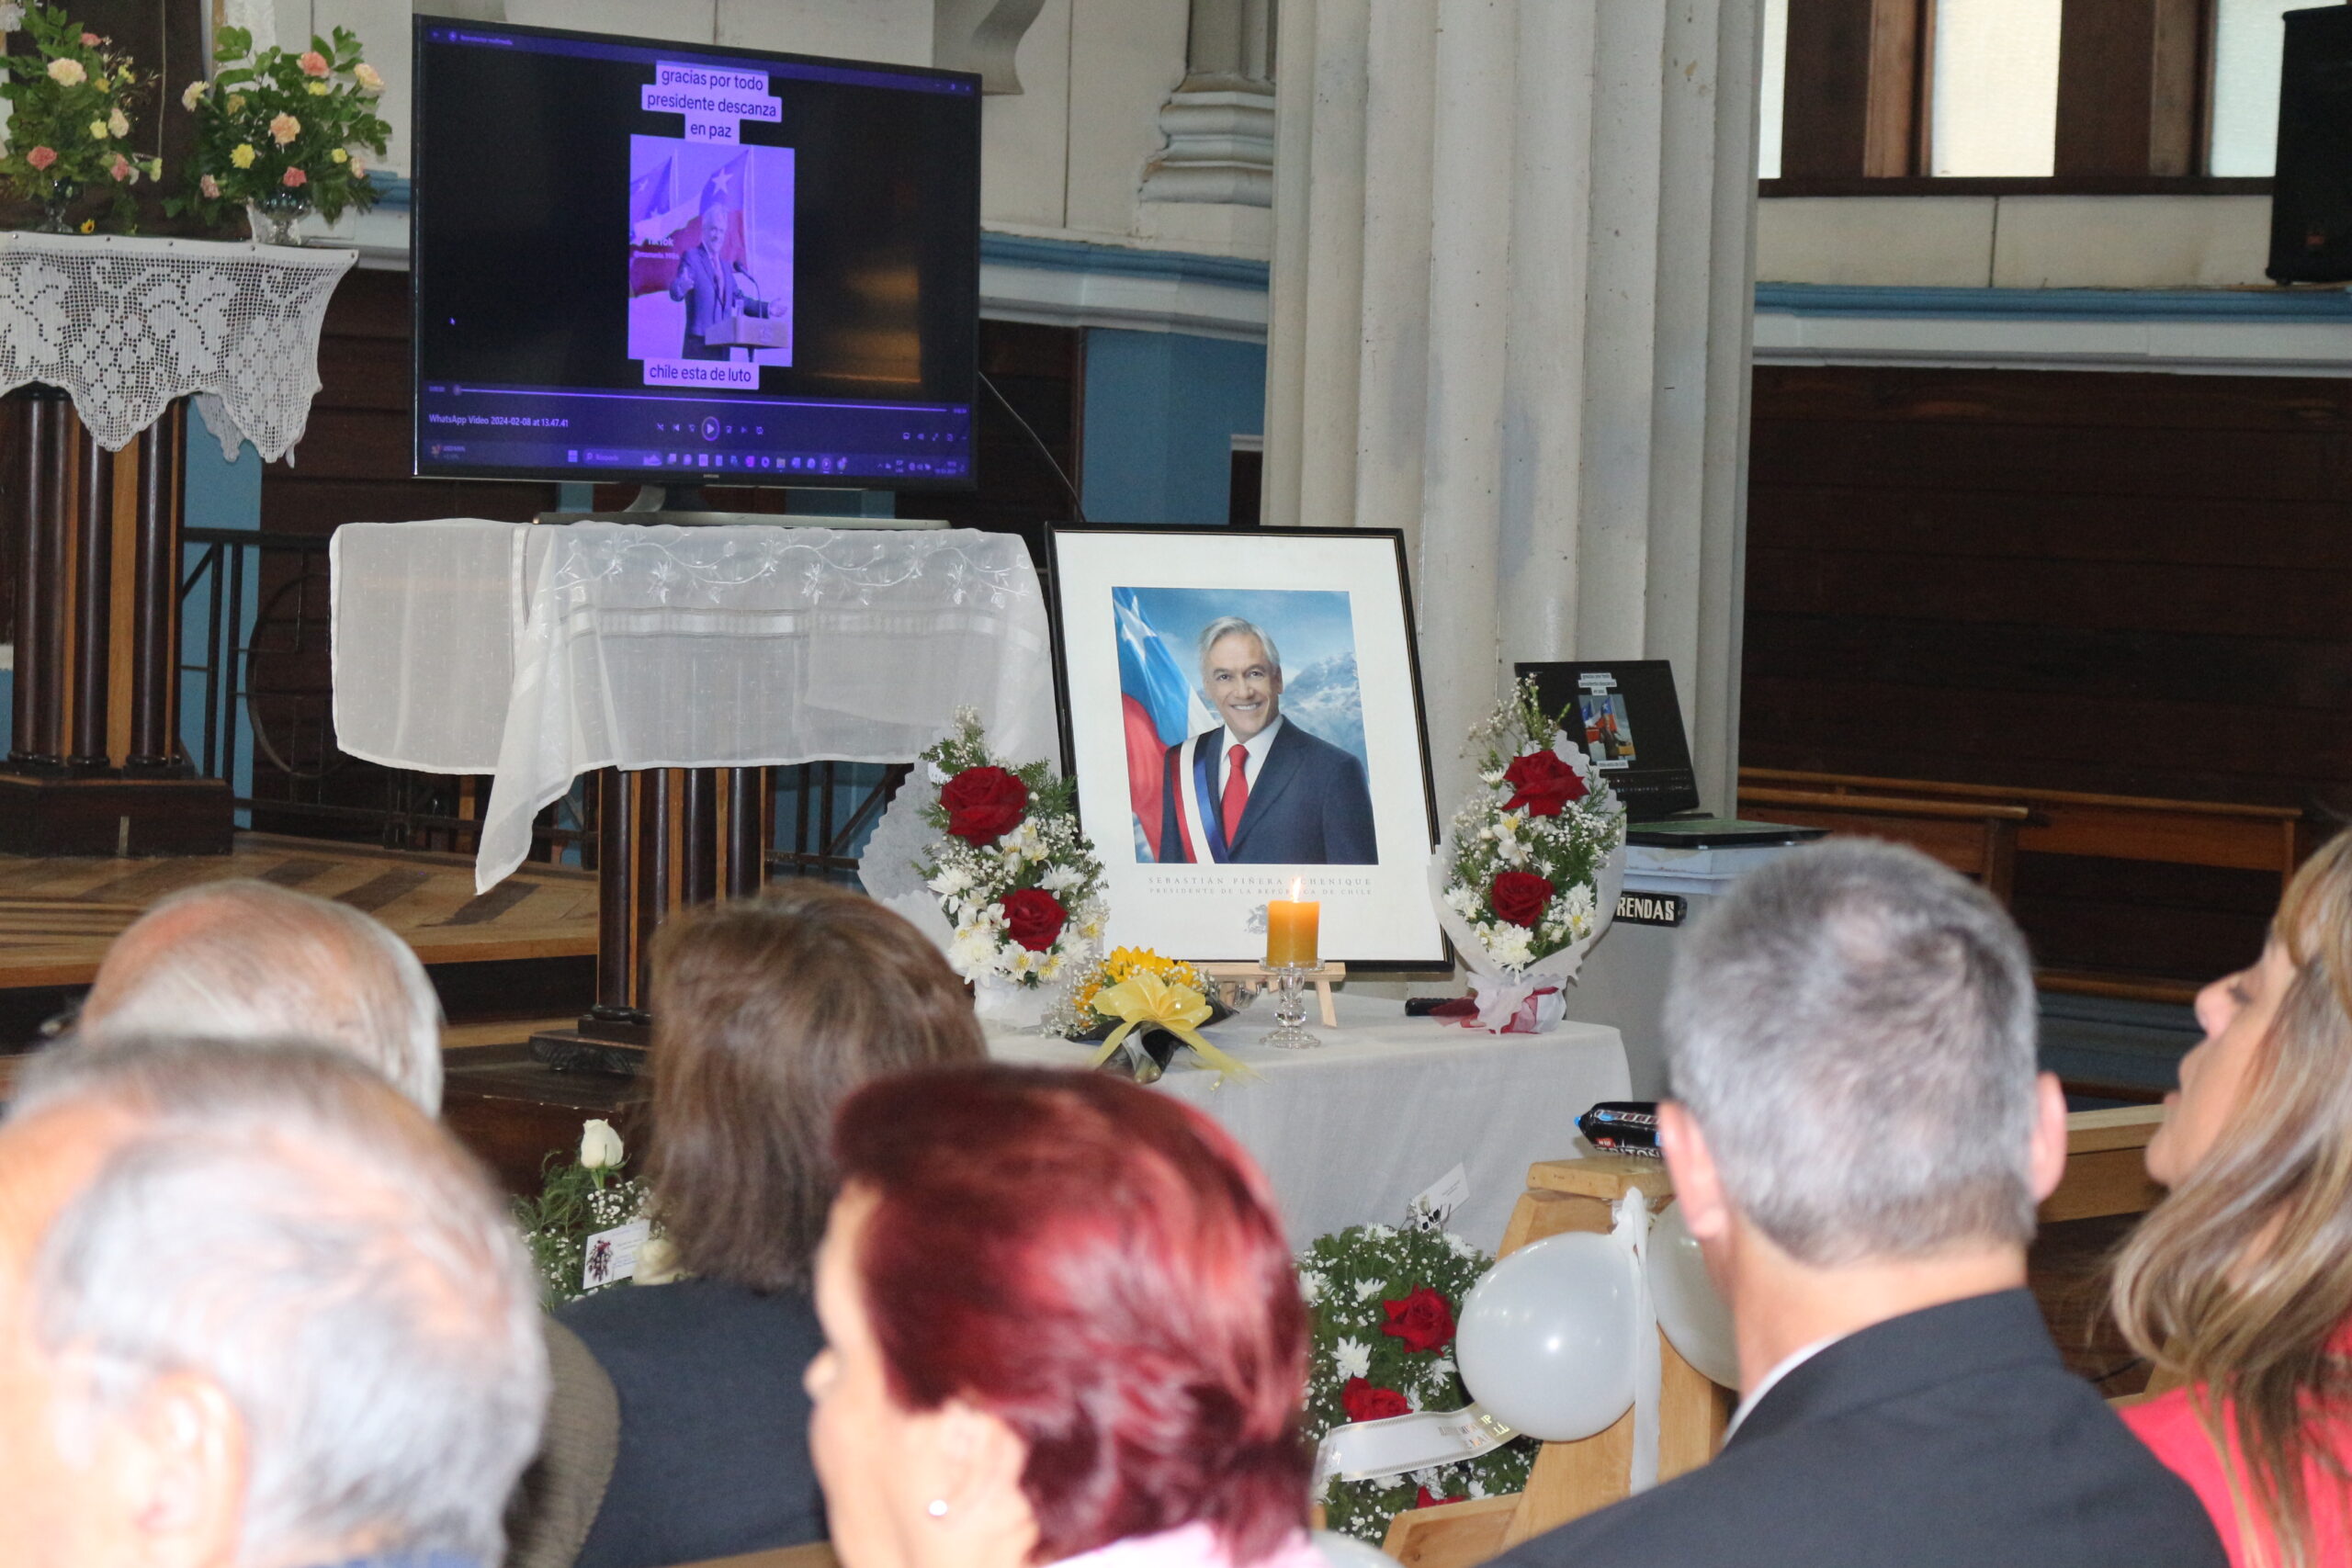 Arzobispo de Puerto Montt presidió Misa en memoria del ex Presidente Sebastián Piñera Echenique